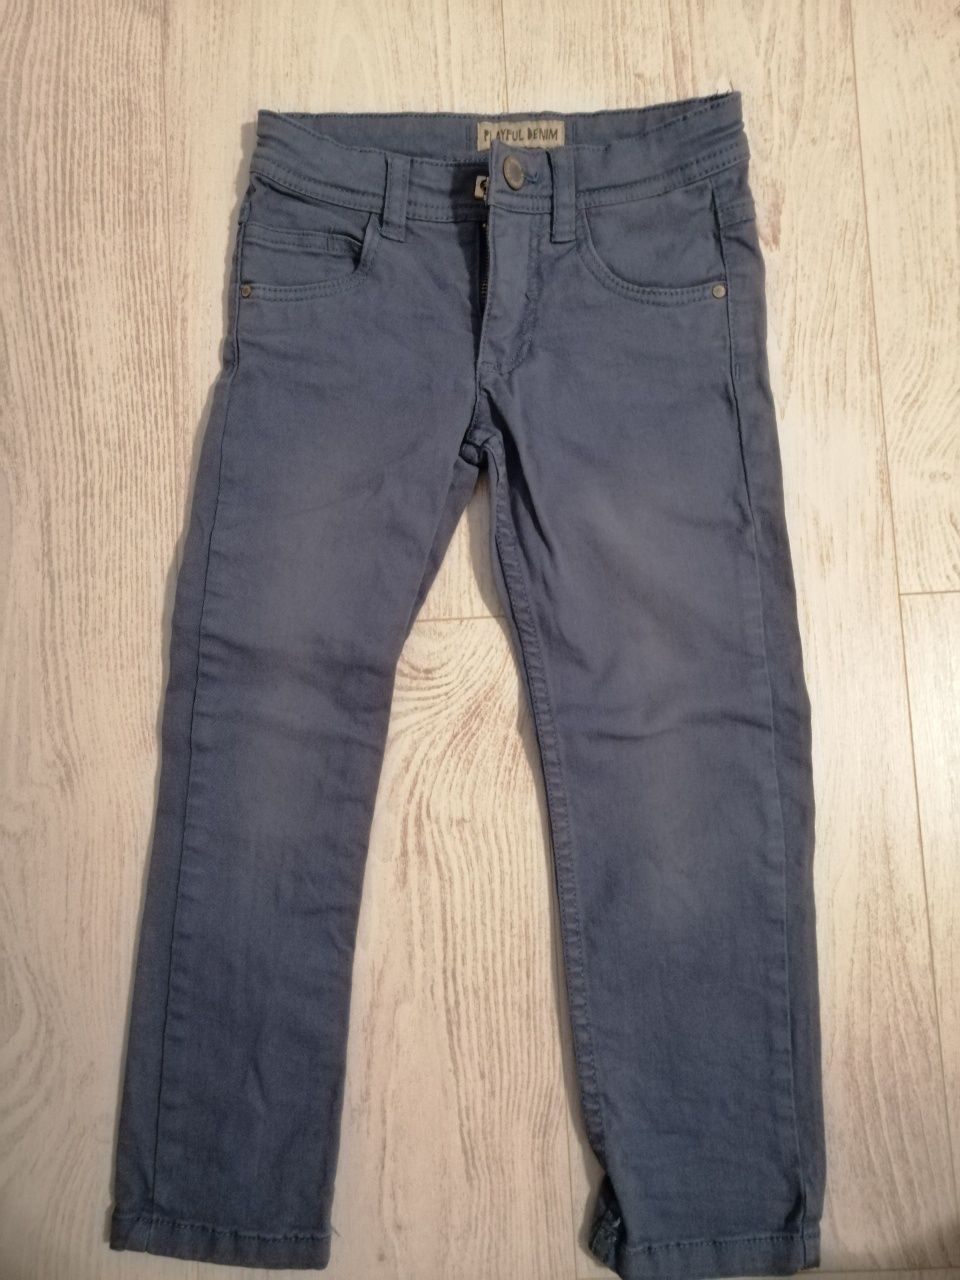 Spodnie jeans rurki rozm. 110